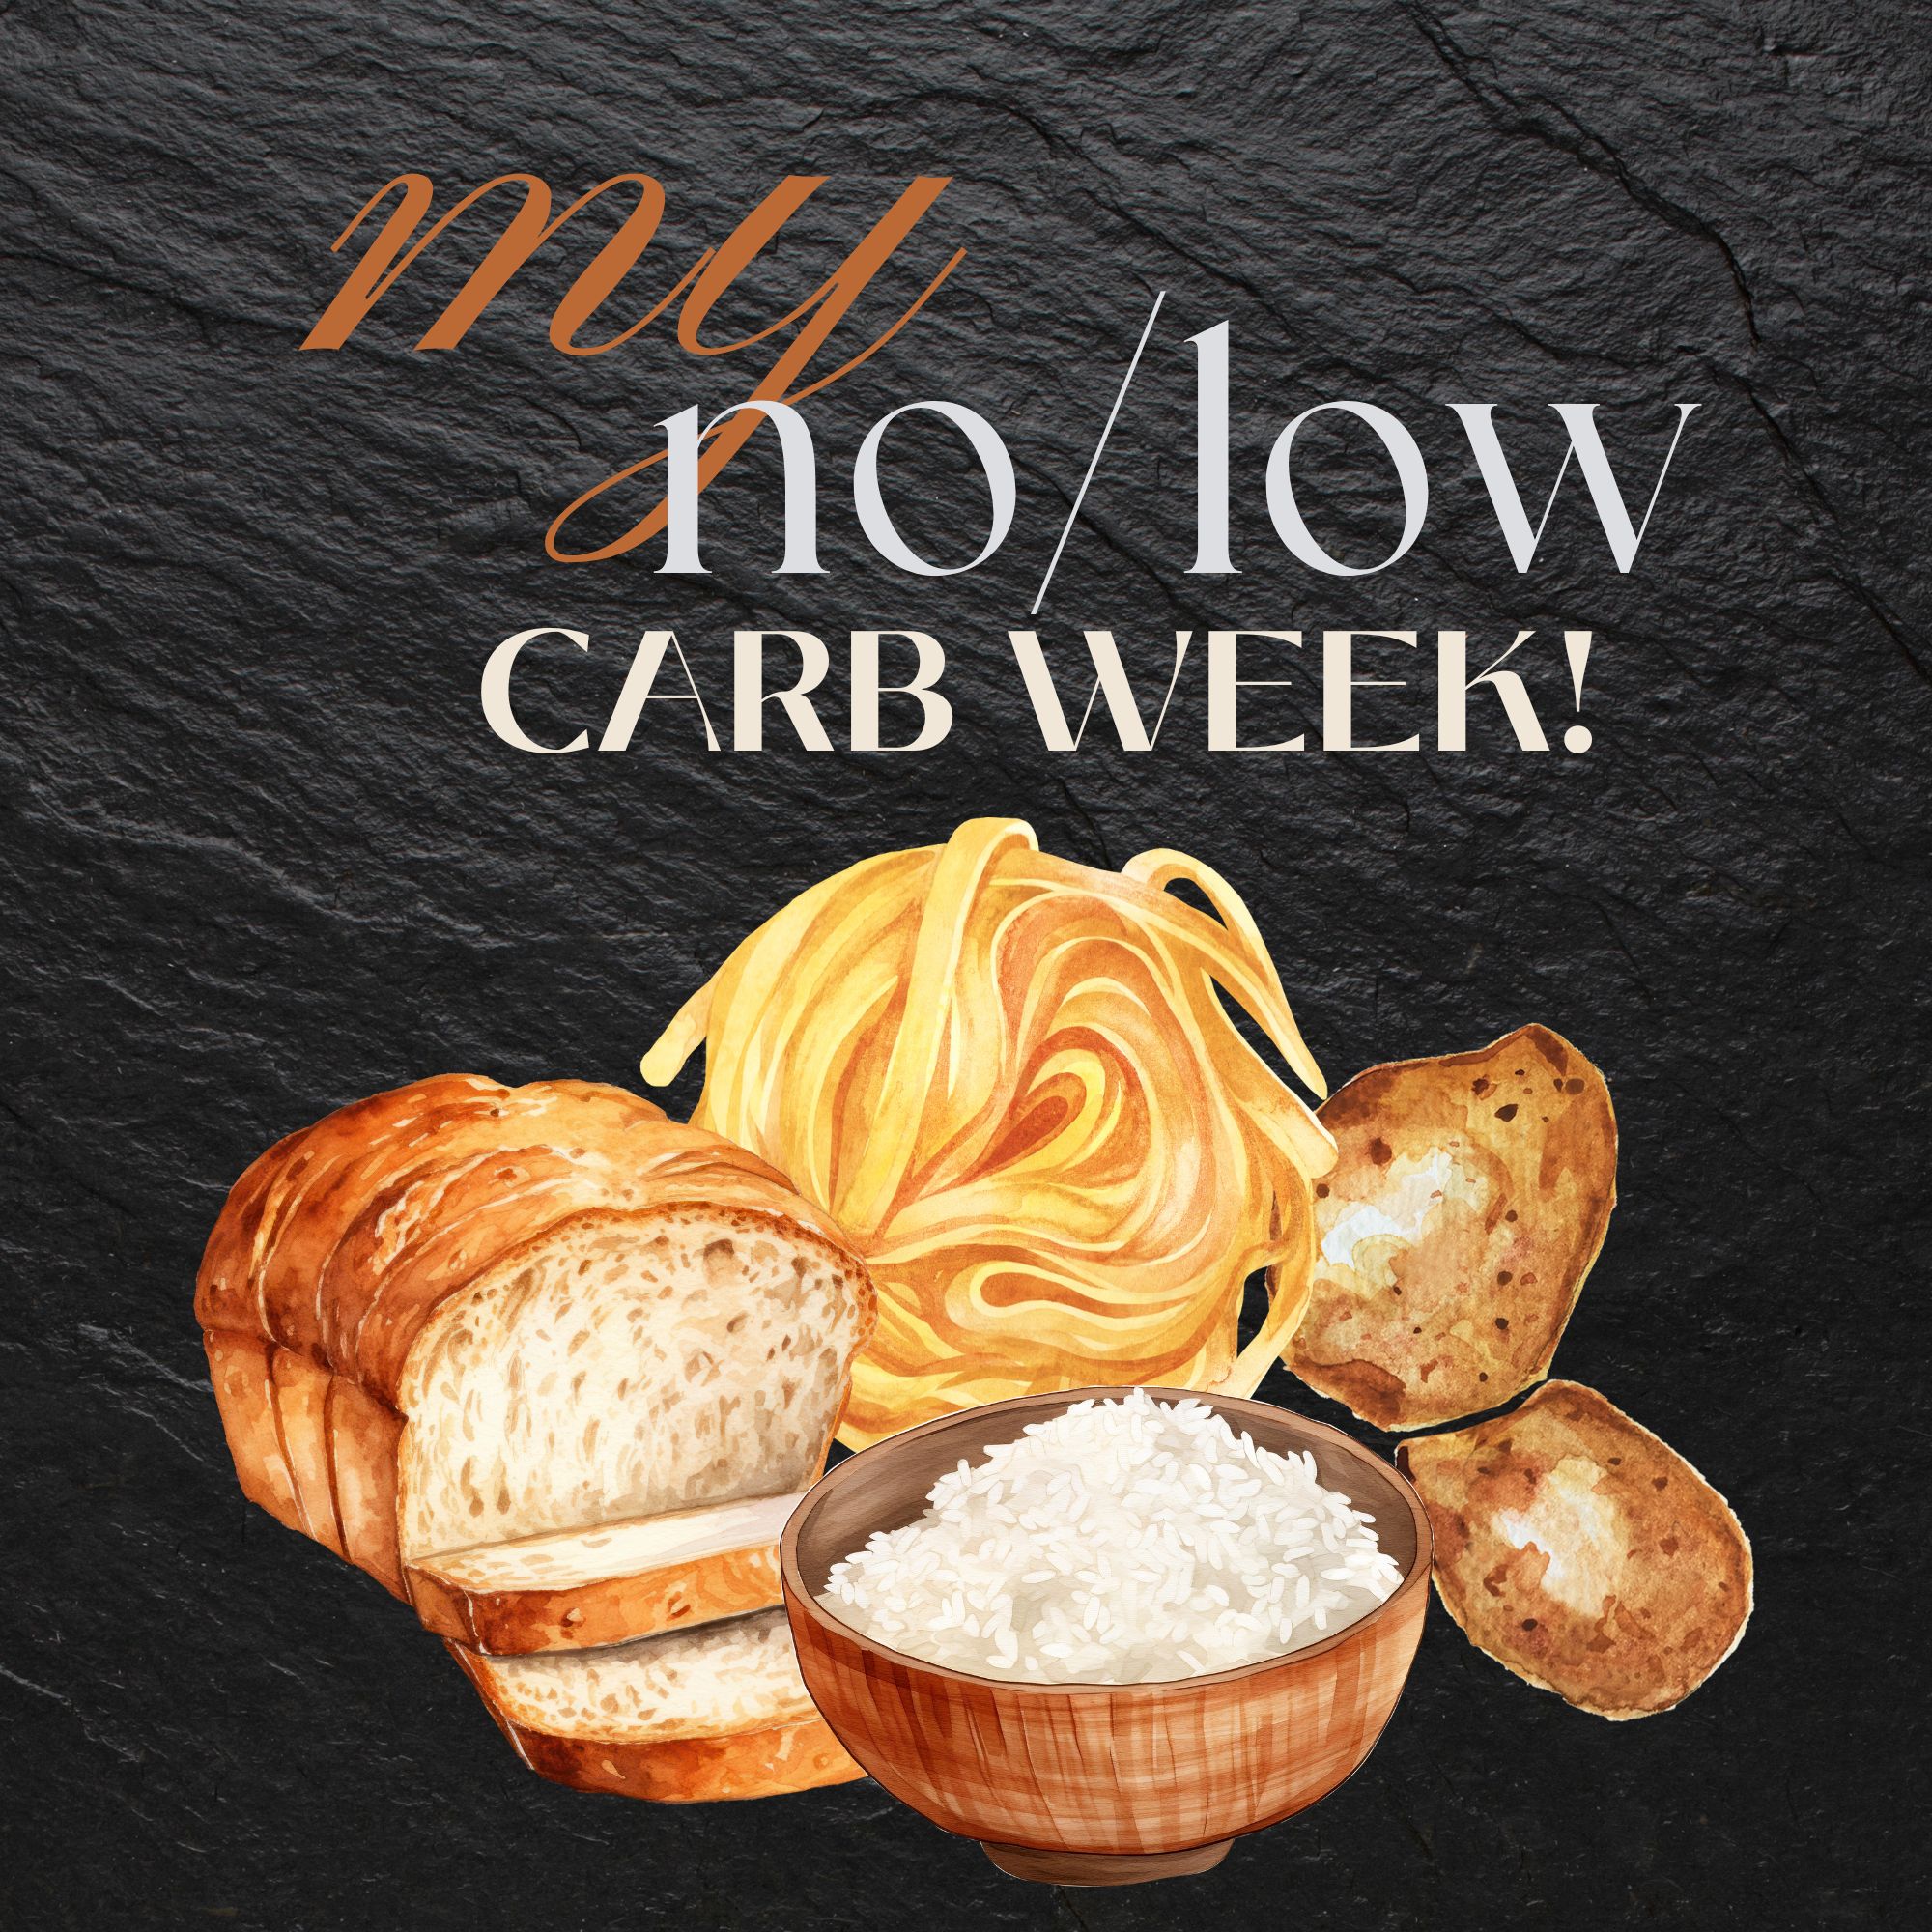 My No/Low Carb Week!